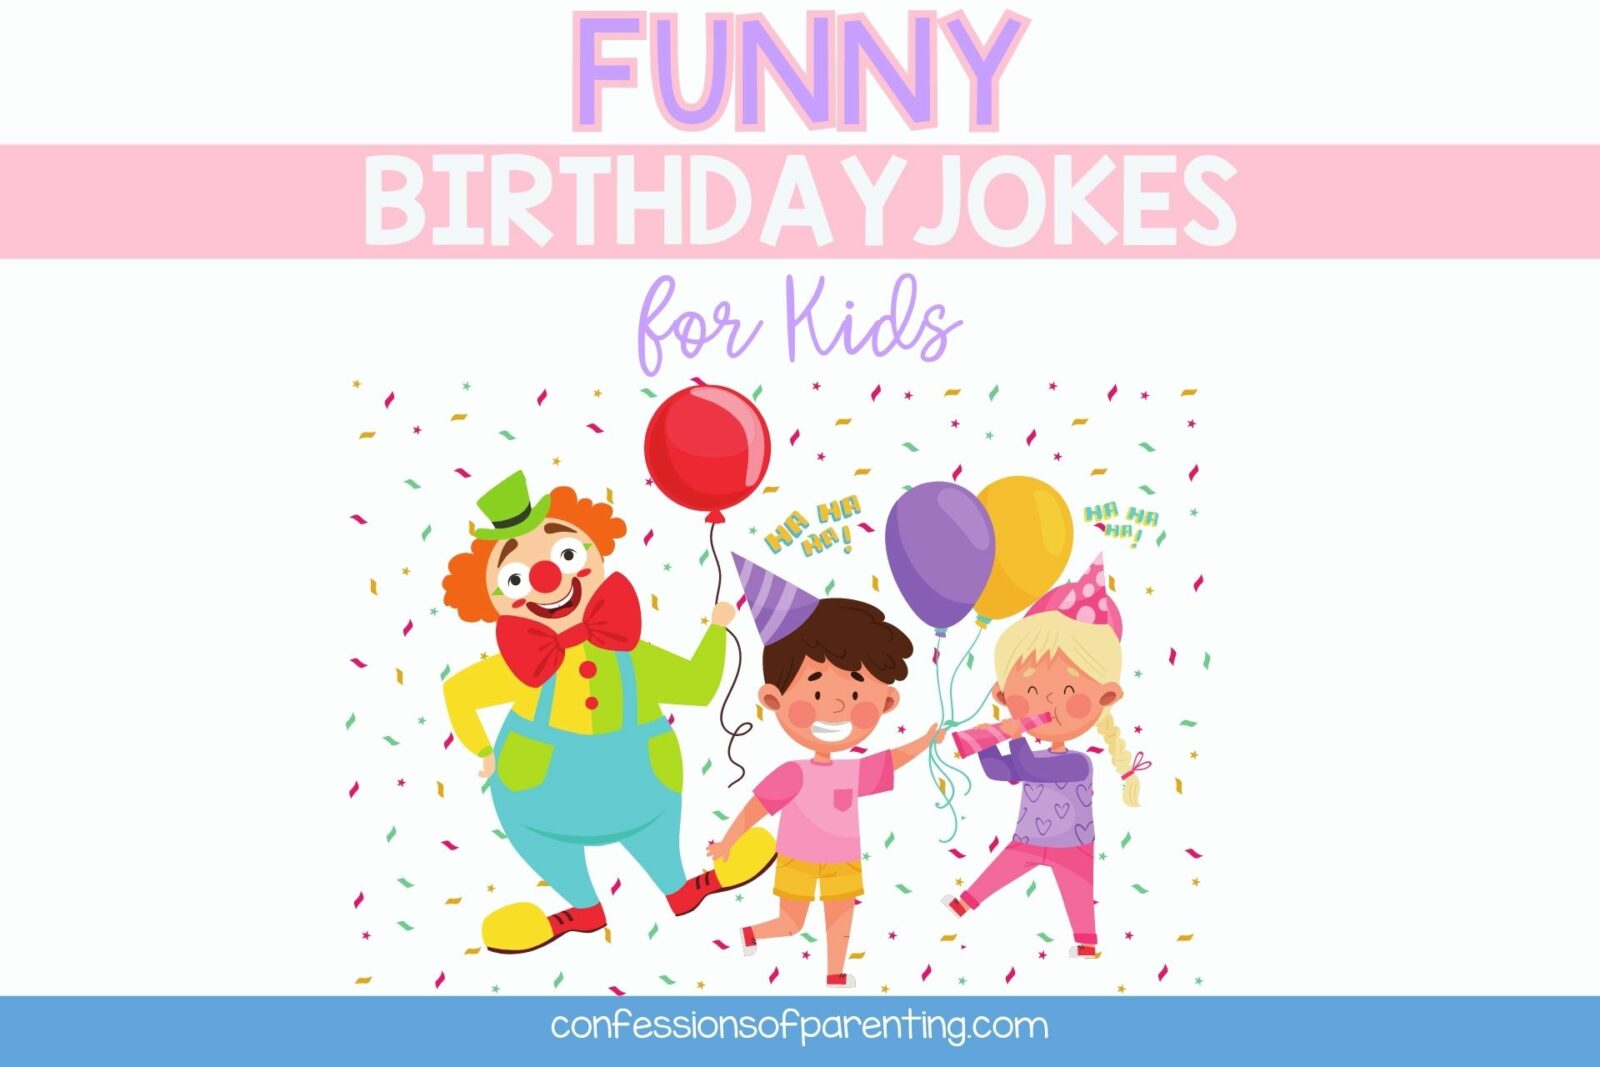 Truyện cười sinh nhật vui nhộn nhất mà trẻ em yêu thích!